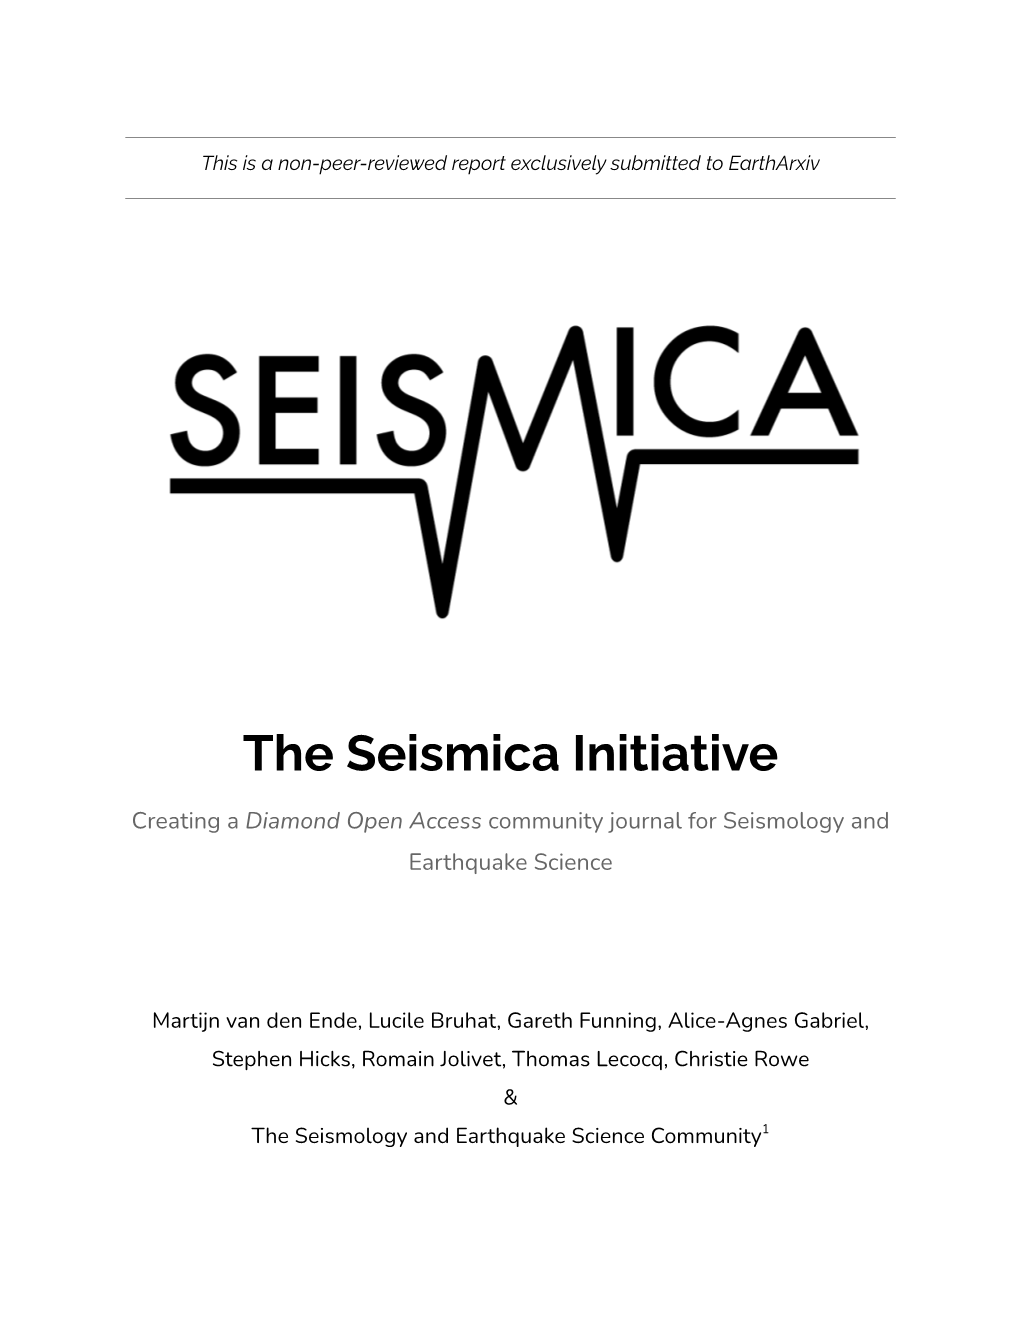 The Seismica Initiative